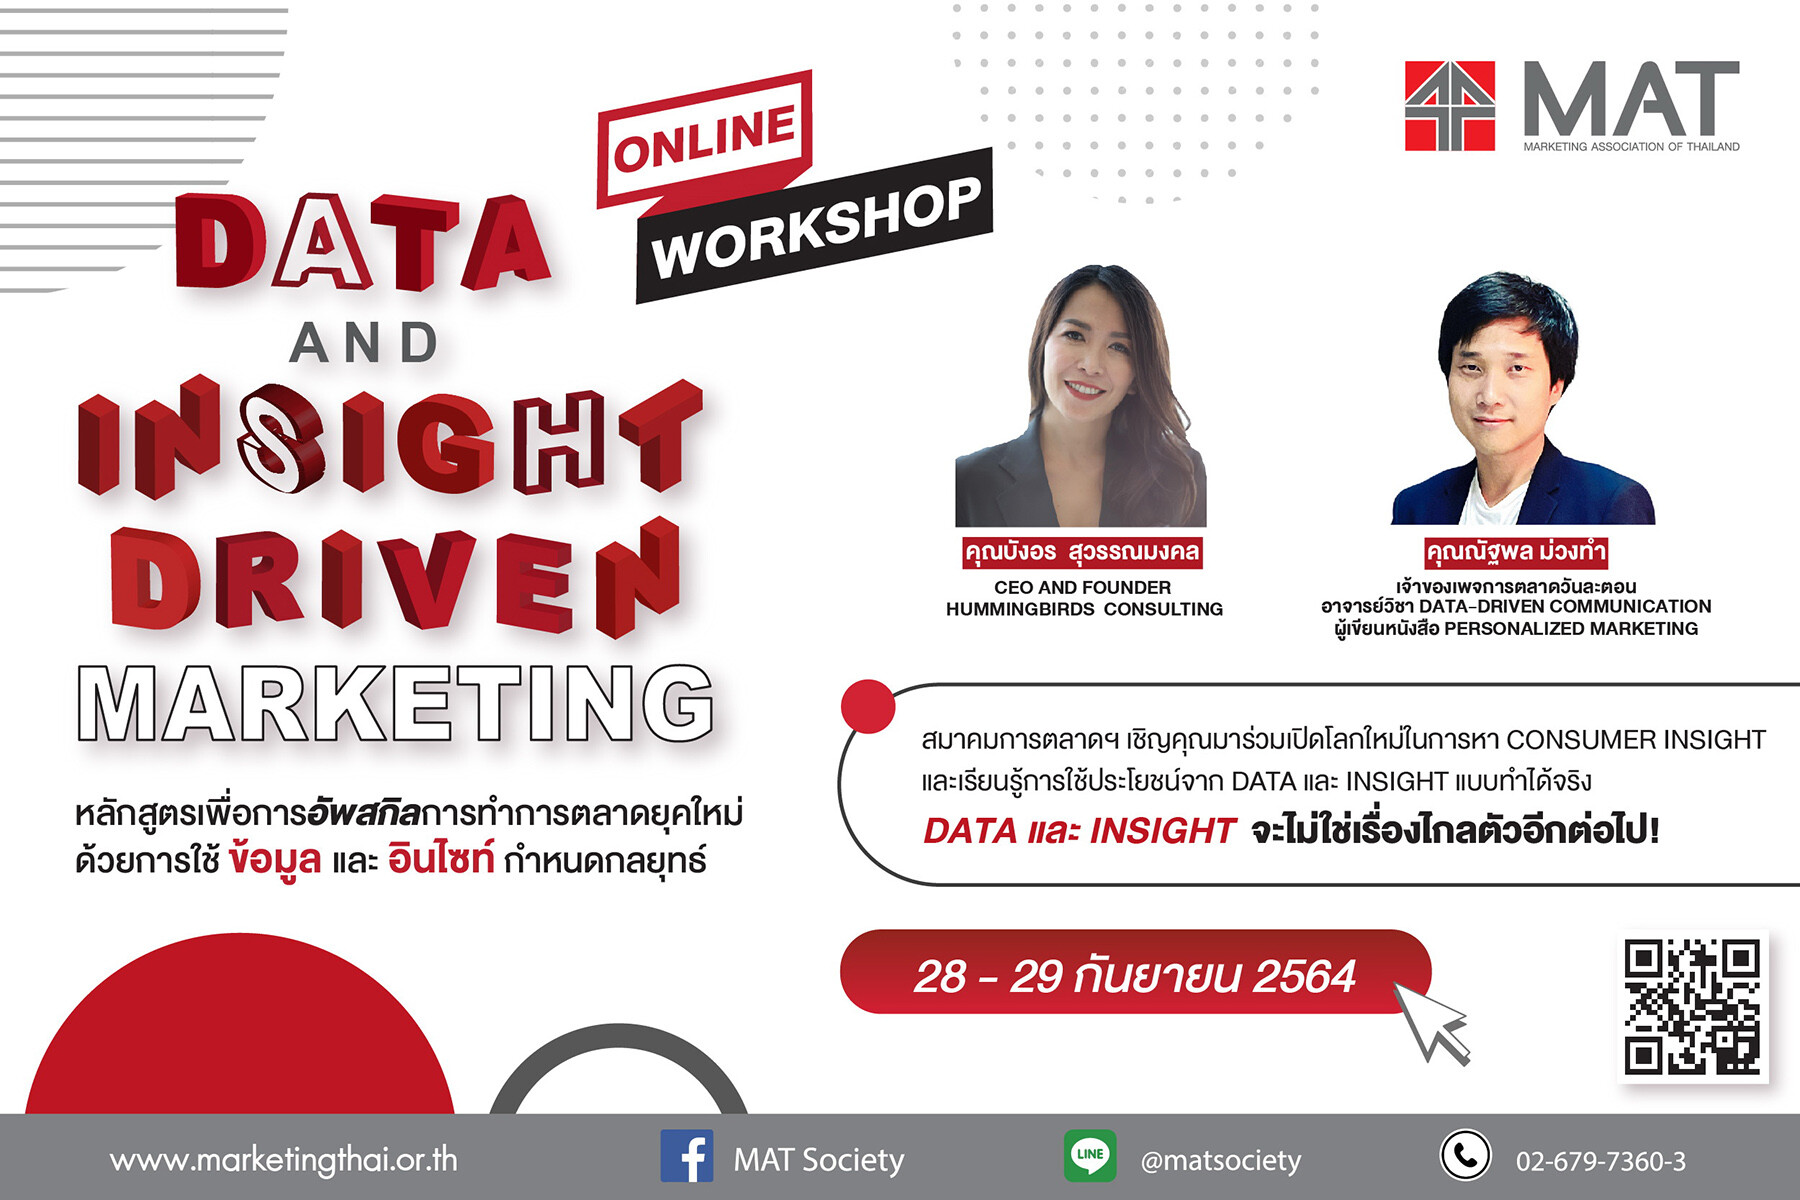 สมาคมการตลาดฯ เปิดหลักสูตร Online Workshop 'Data and Insight Driven Marketing - Online Workshop'